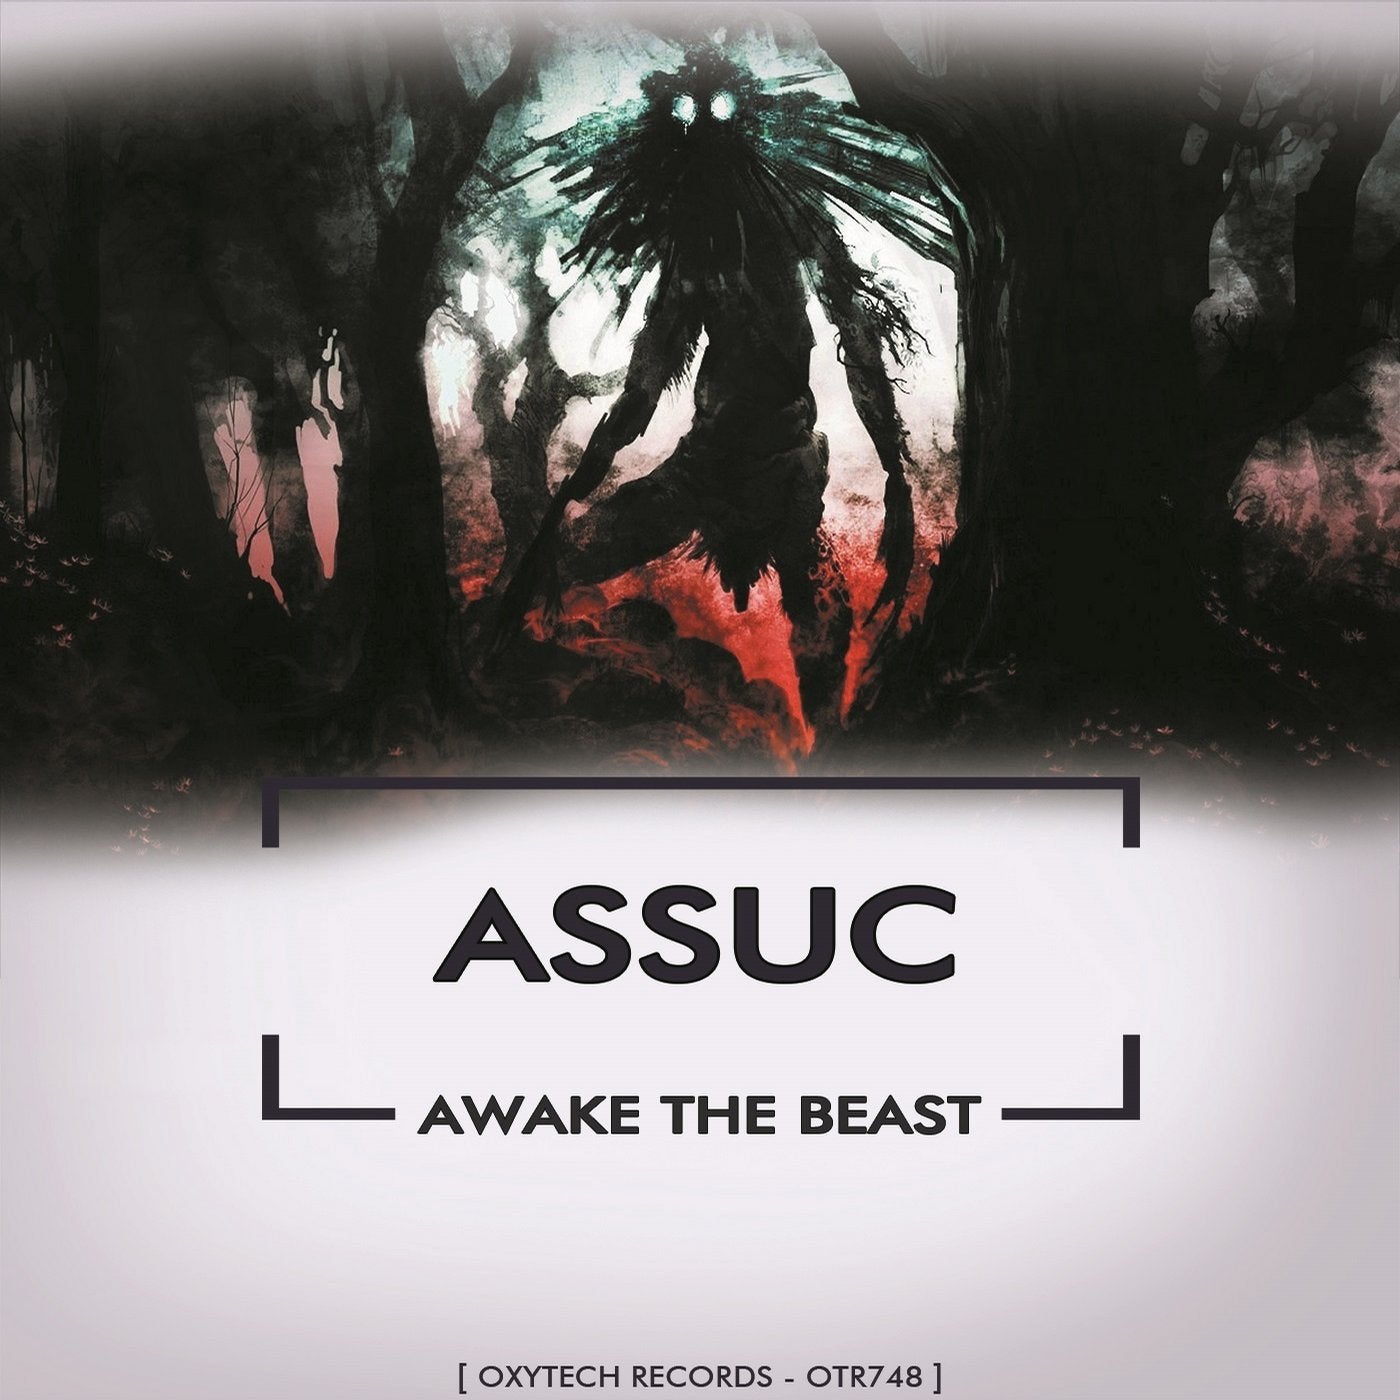 Awake the Beast